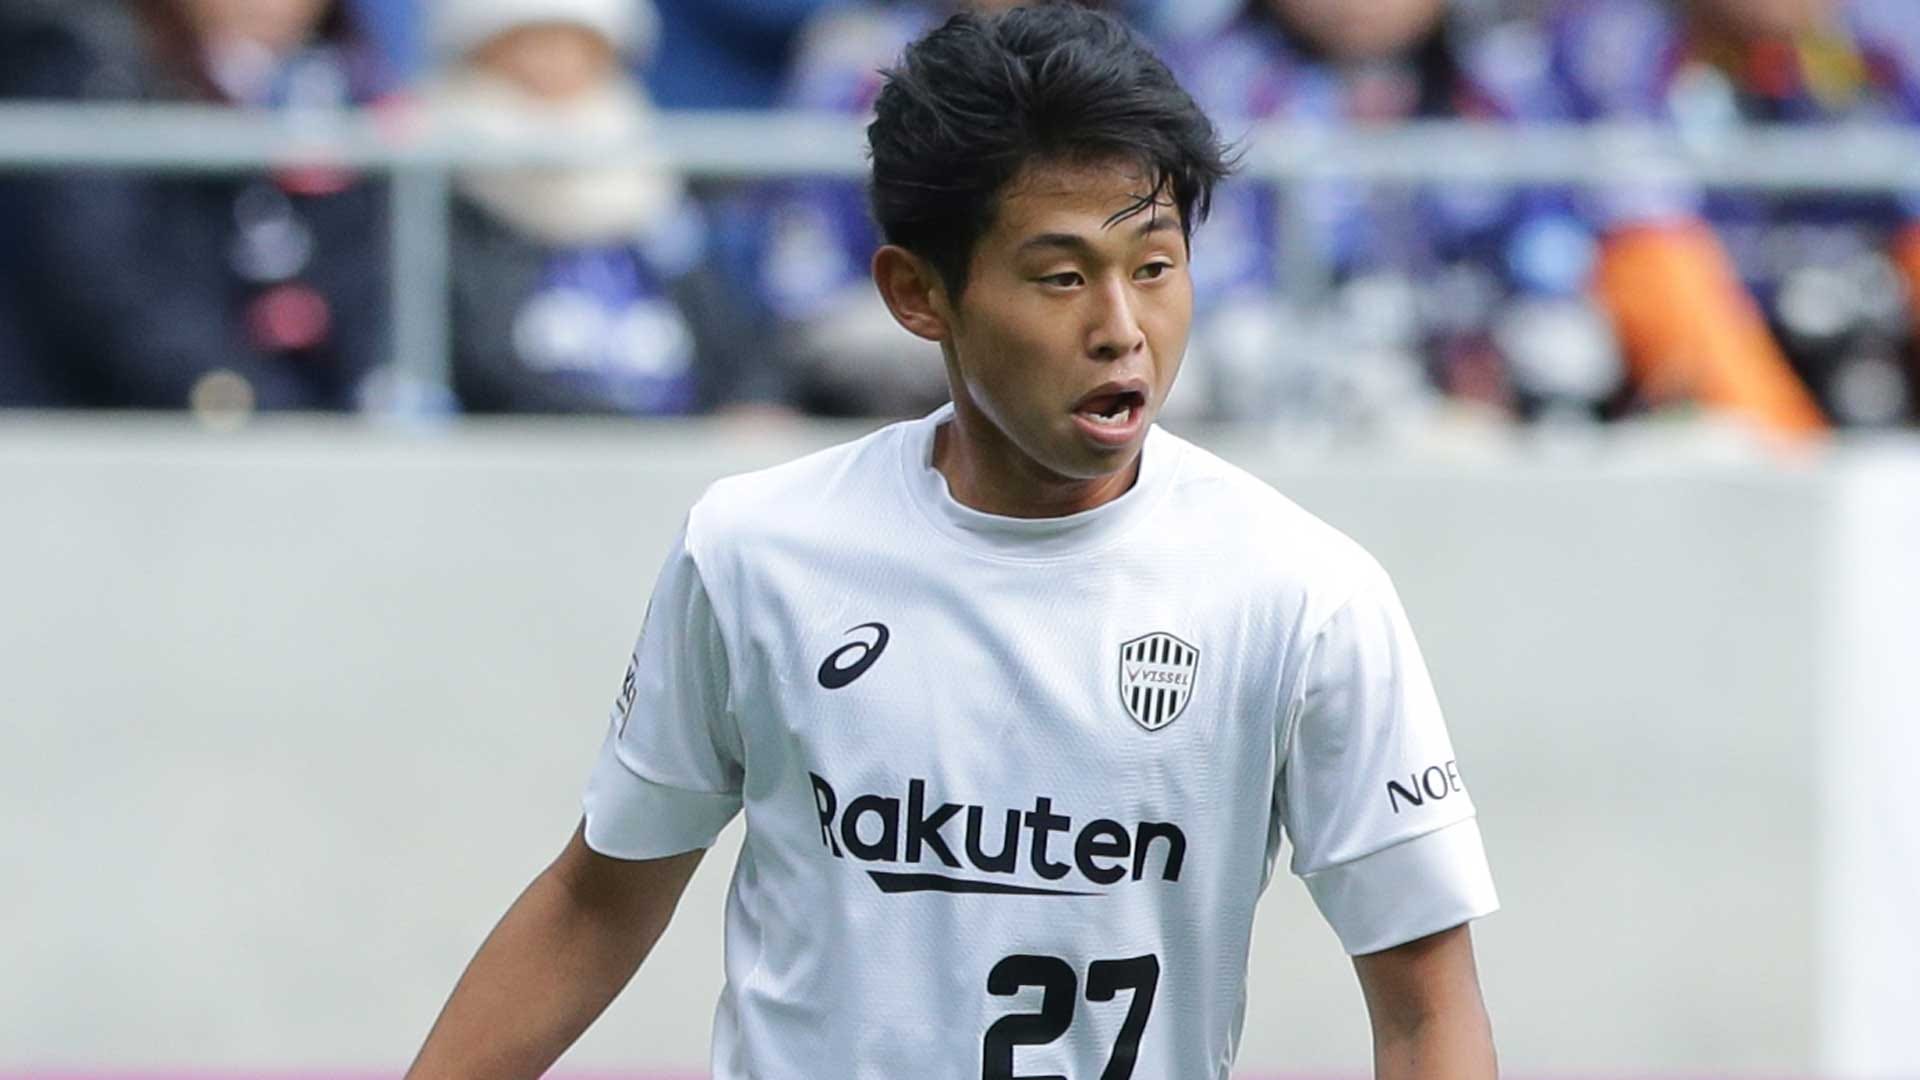 ヴィッセル神戸 勝ち点10に到達 広島が今季初黒星 ルヴァンカップ第4節 Goal Com 日本